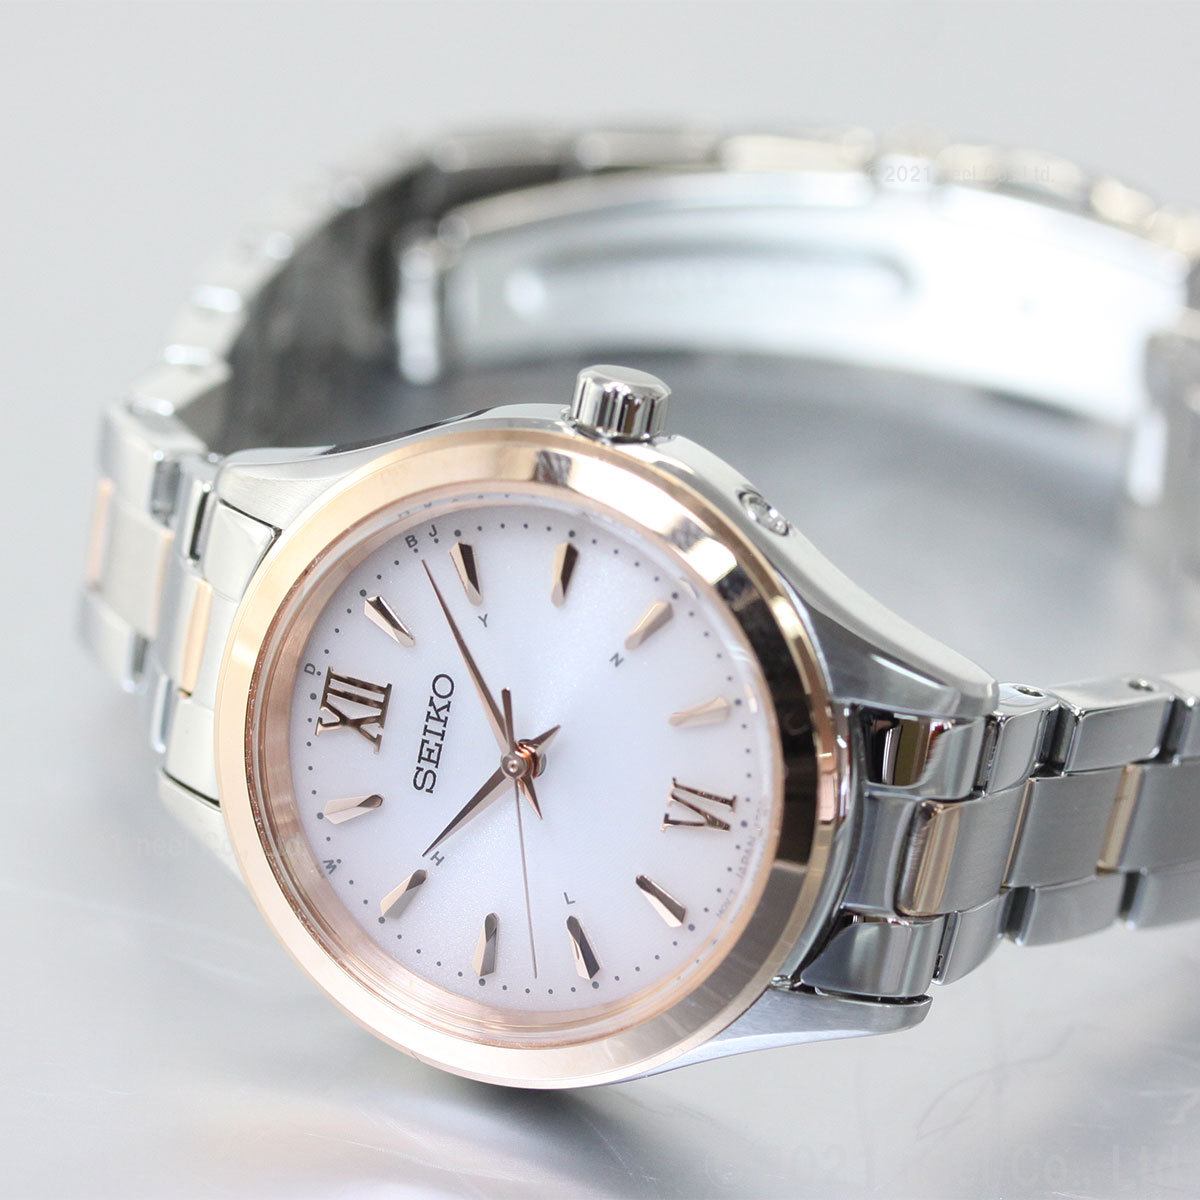 セイコー セレクション SEIKO SELECTION ソーラー 電波時計 腕時計 